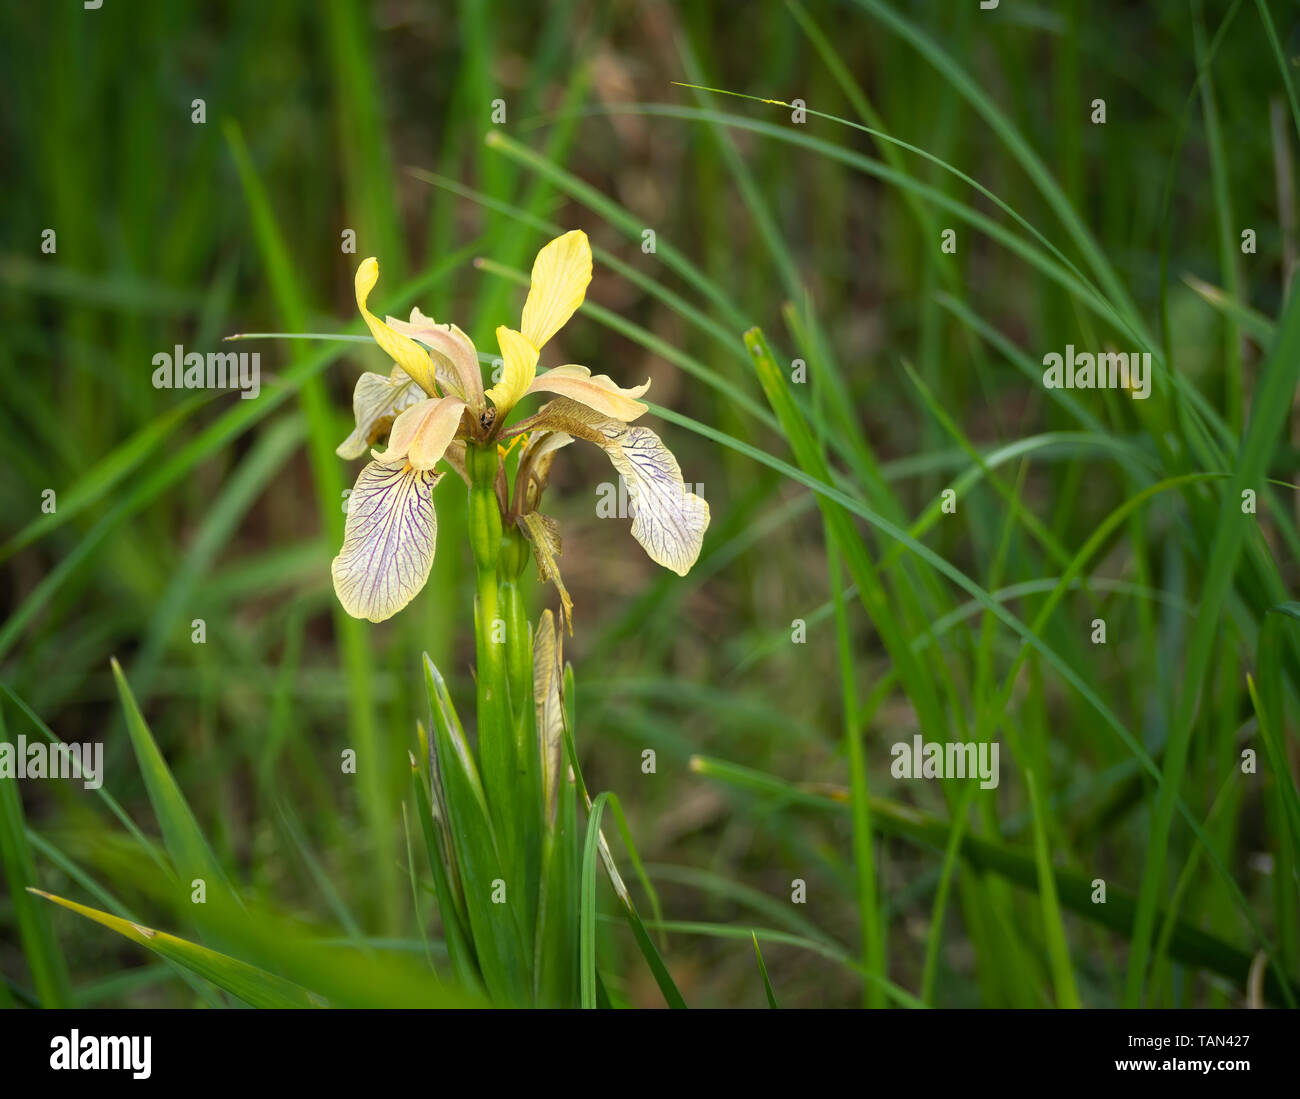 Puzzolente fiore Iris - Iris foetidissima. Foto Stock